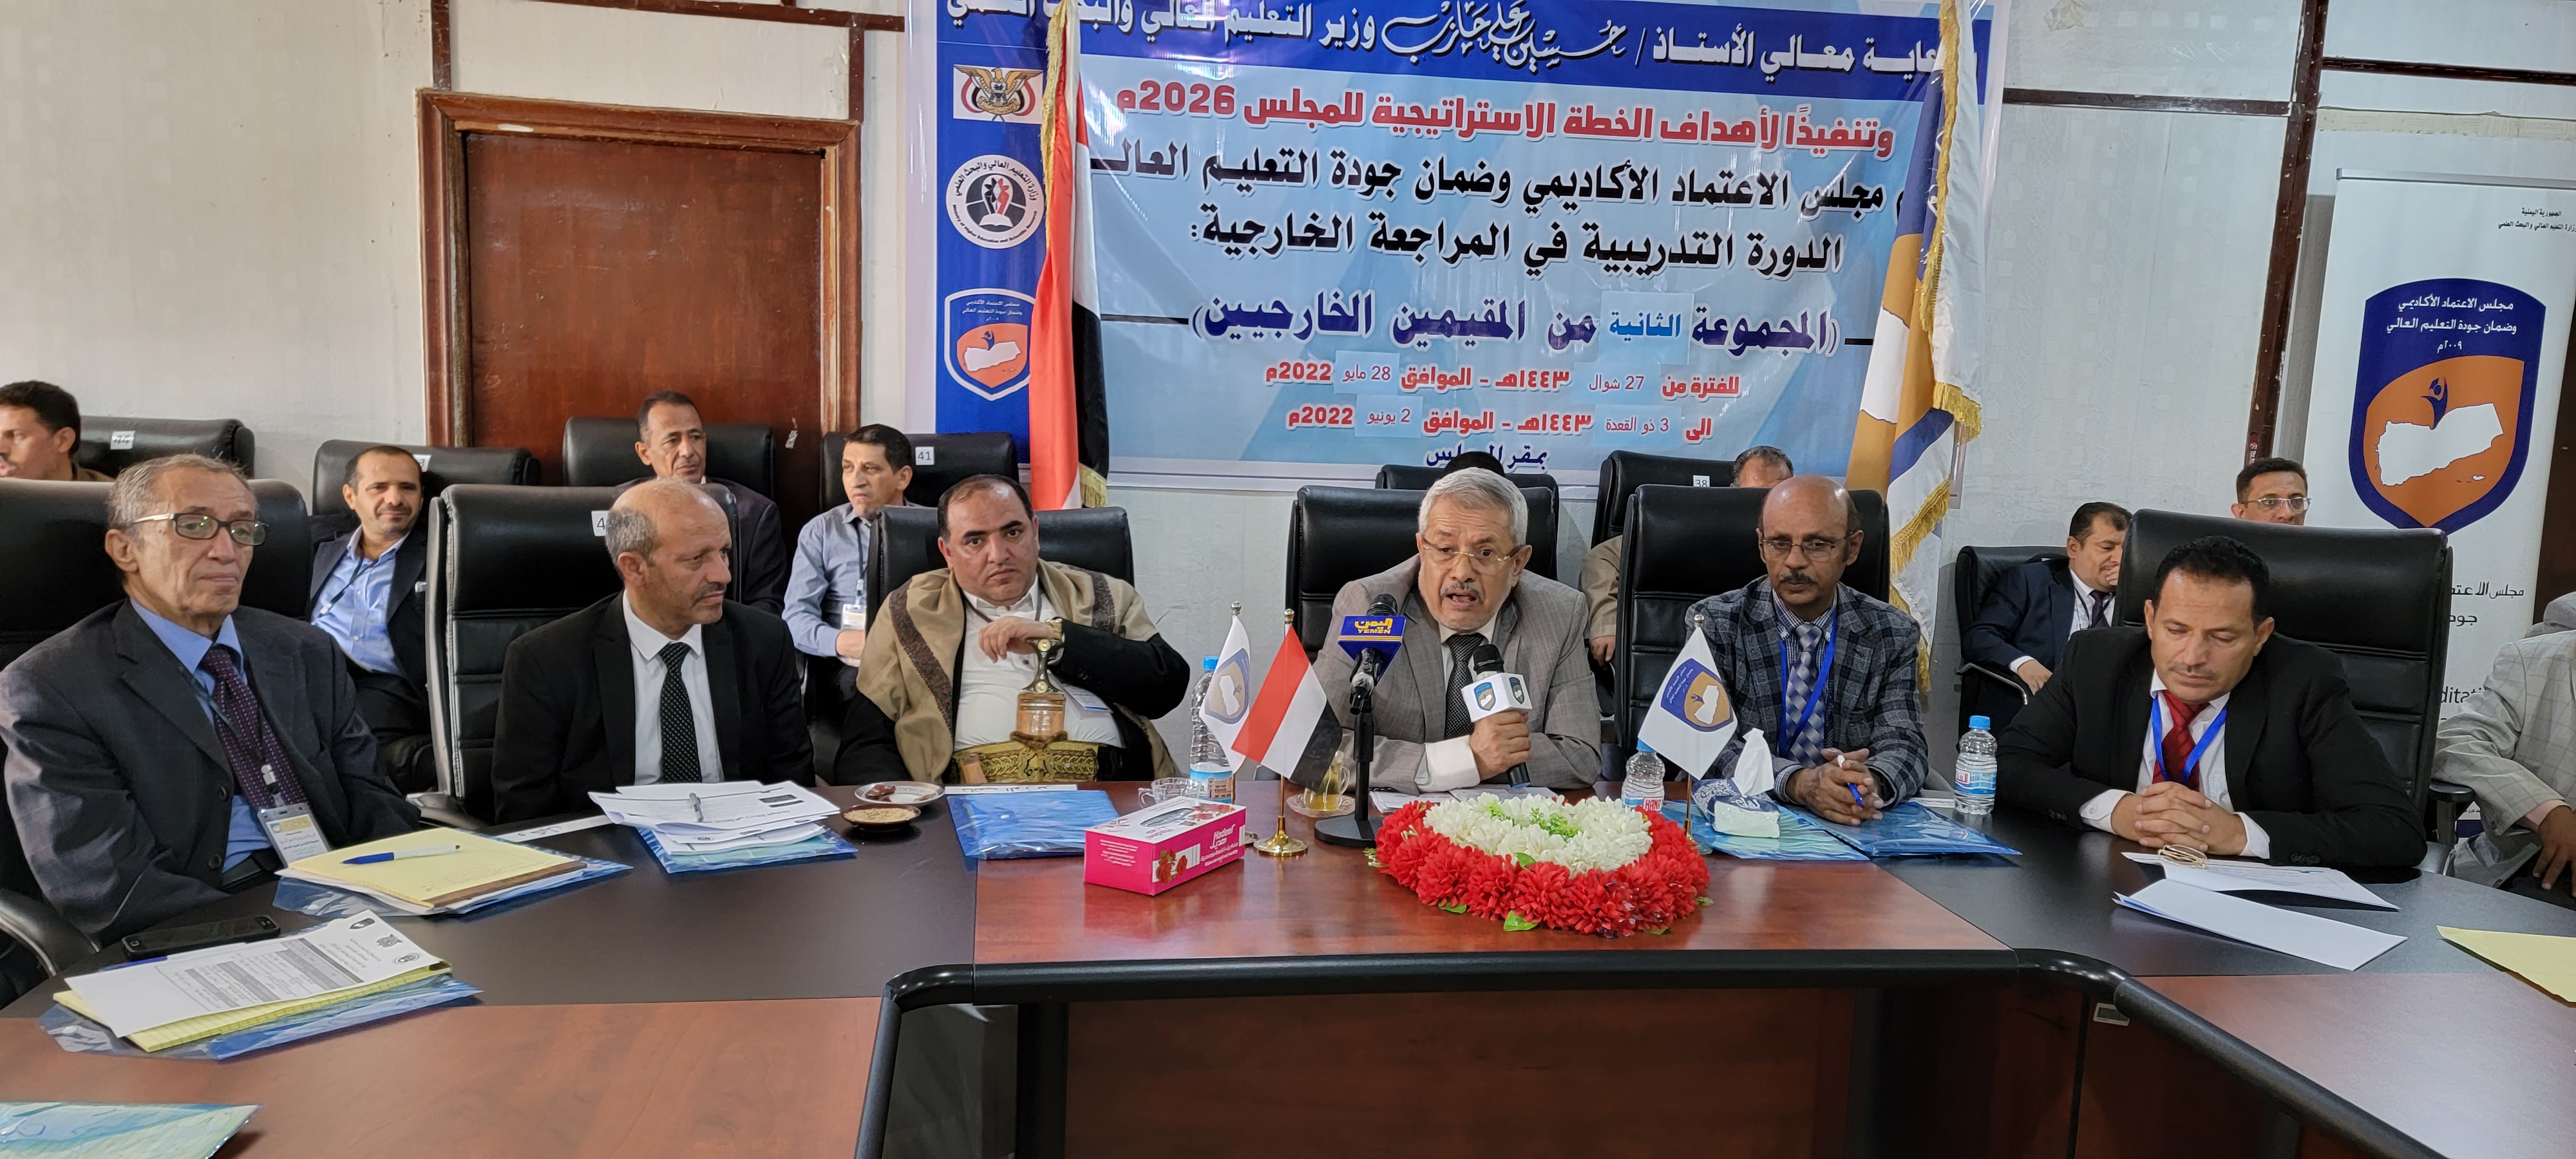 بدء دورة مراجعة وتقييم التخصصات الهندسية والحاسوبية والإدارية بالجامعات اليمنية